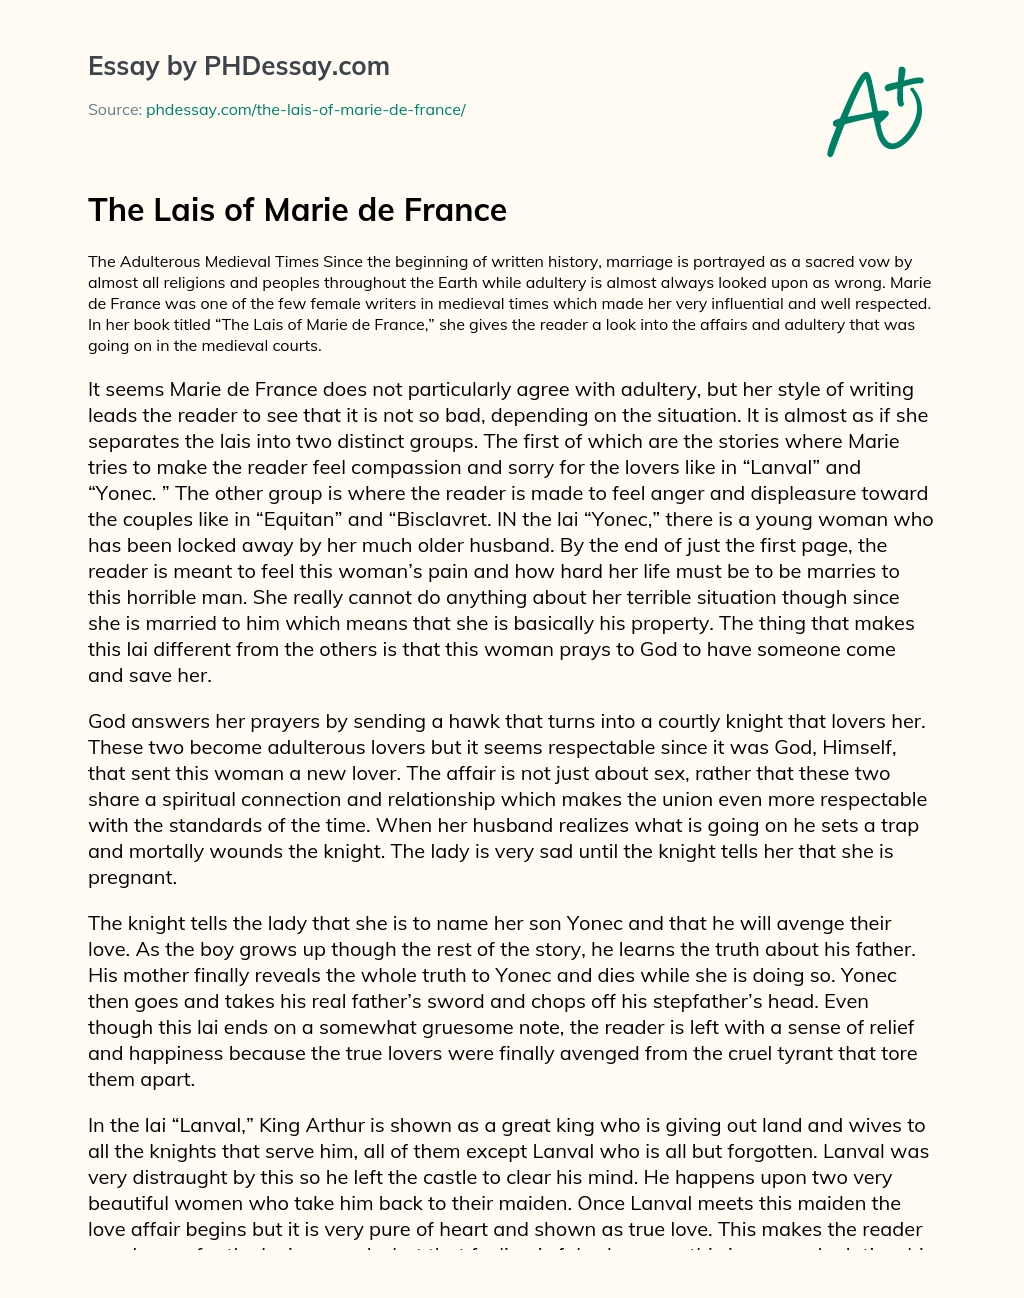 The Lais of Marie de France essay